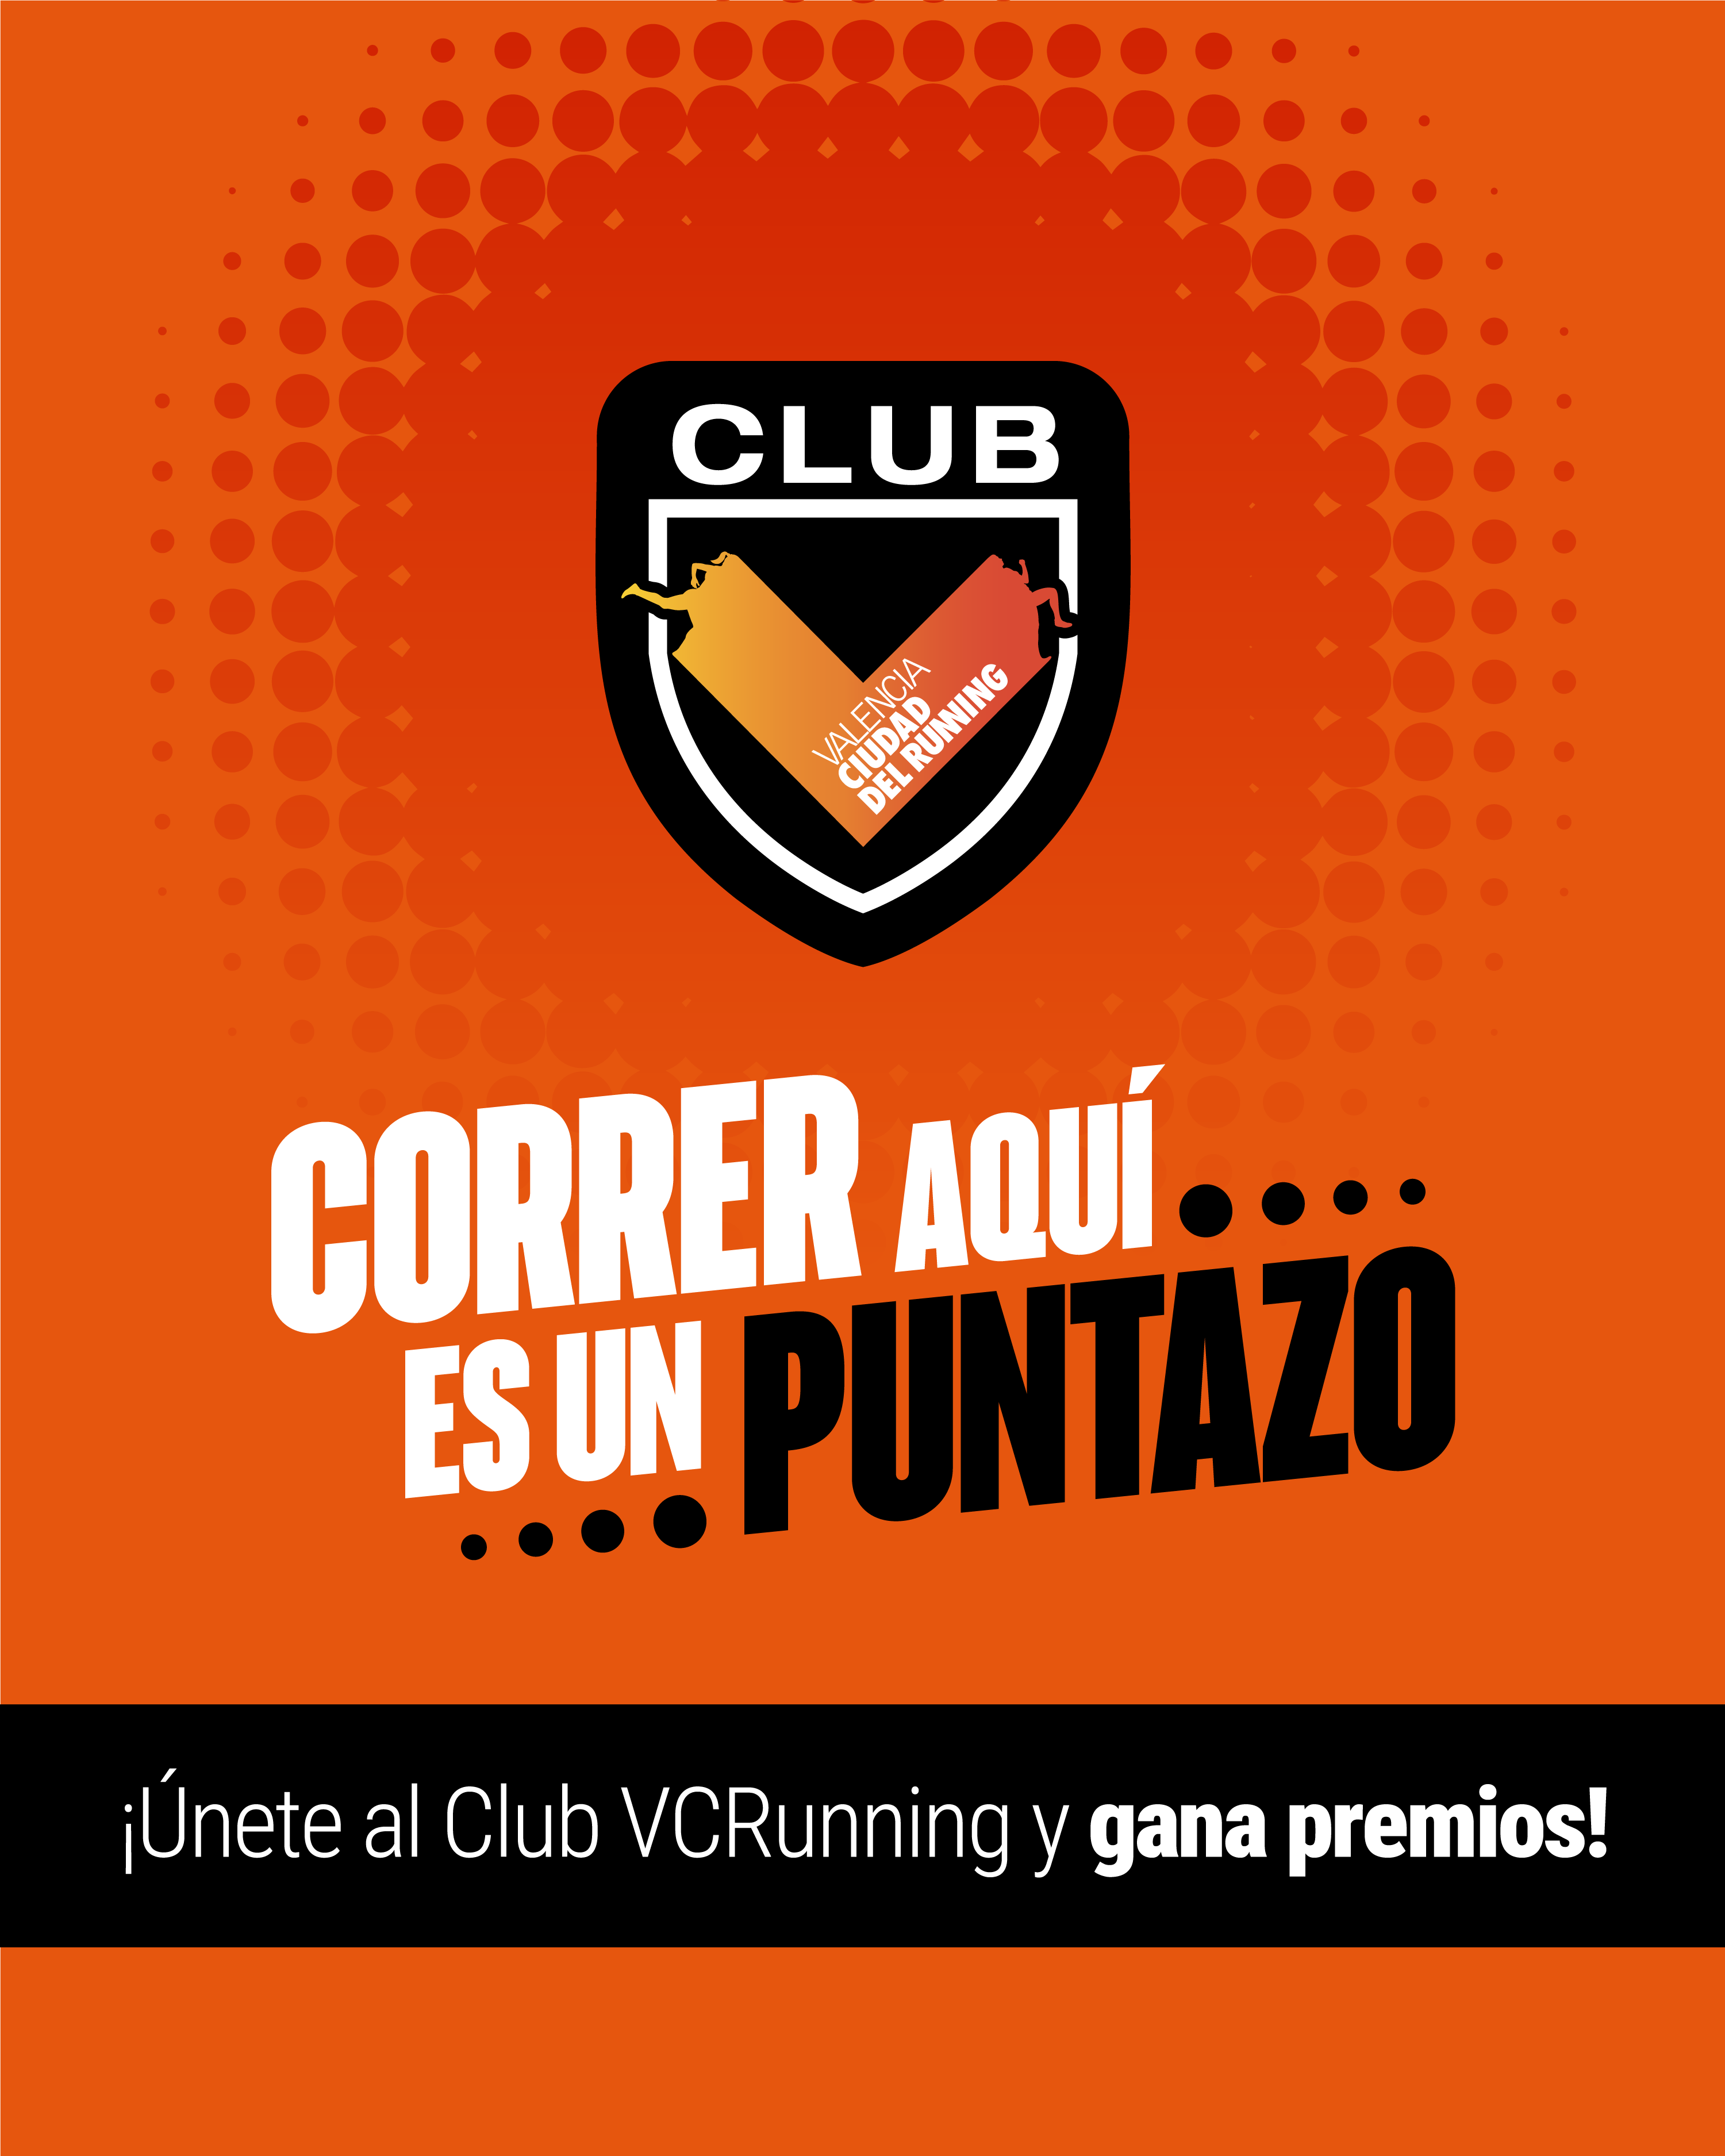 El registre en el Club VCRunning és gratuït a través de la pàgina web https://club.valenciaciudaddelrunning.com/.